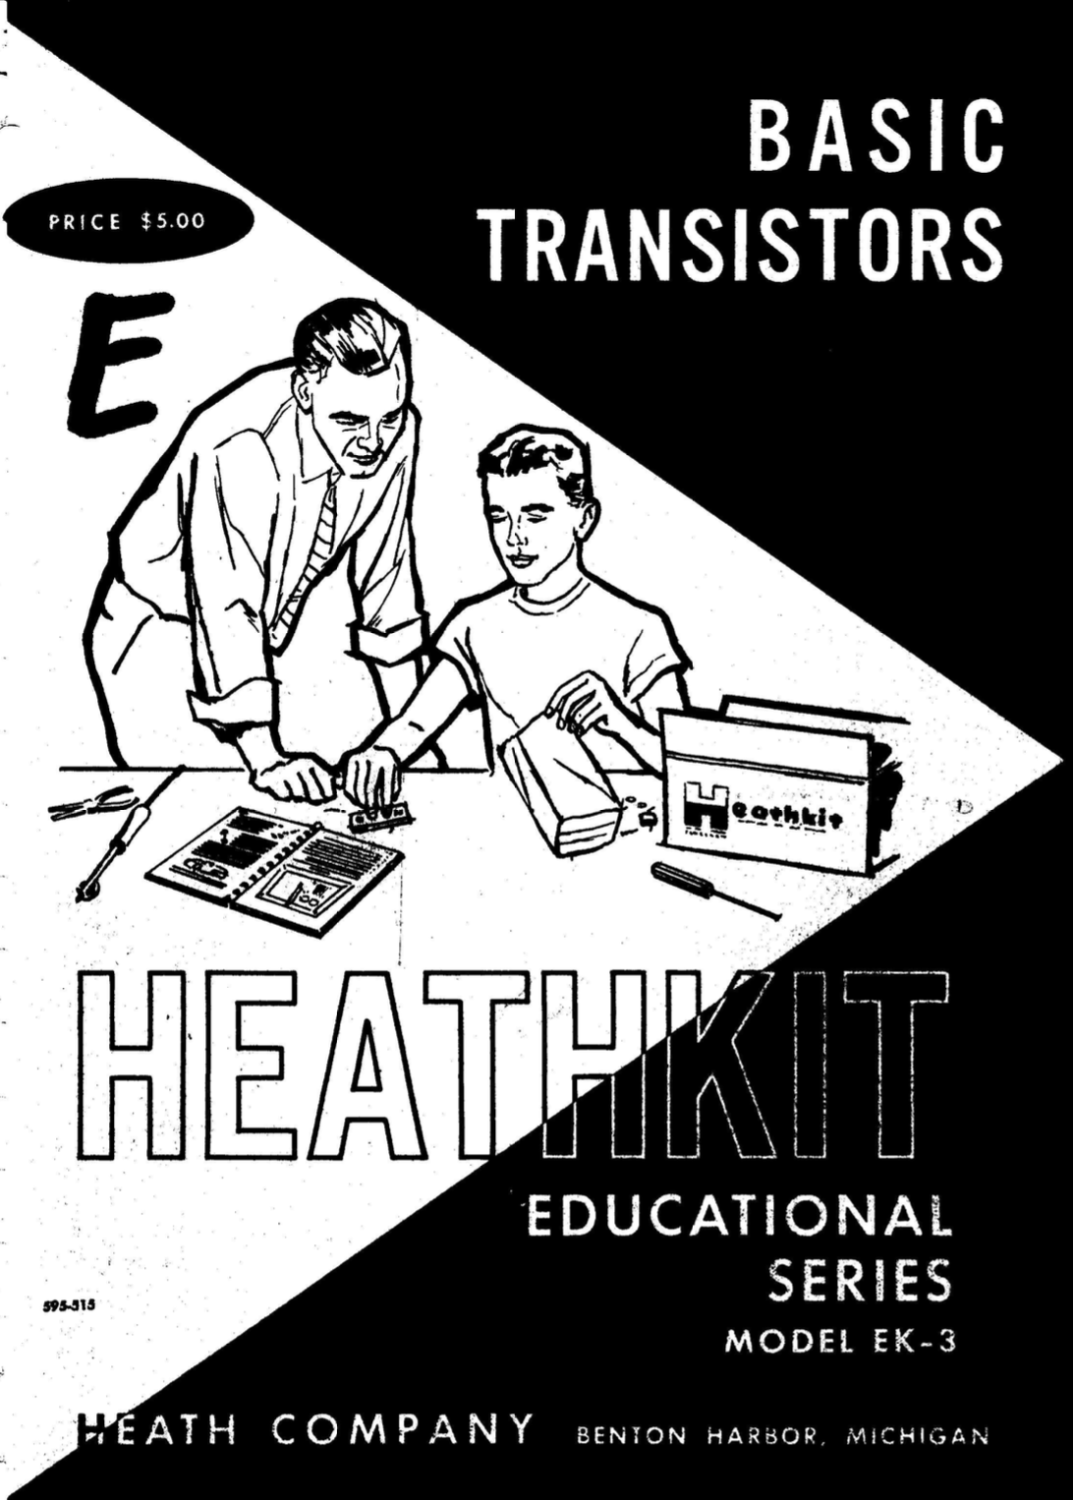 Heathkit EK-3 - Heathkit Educational Series - Basic Transistors